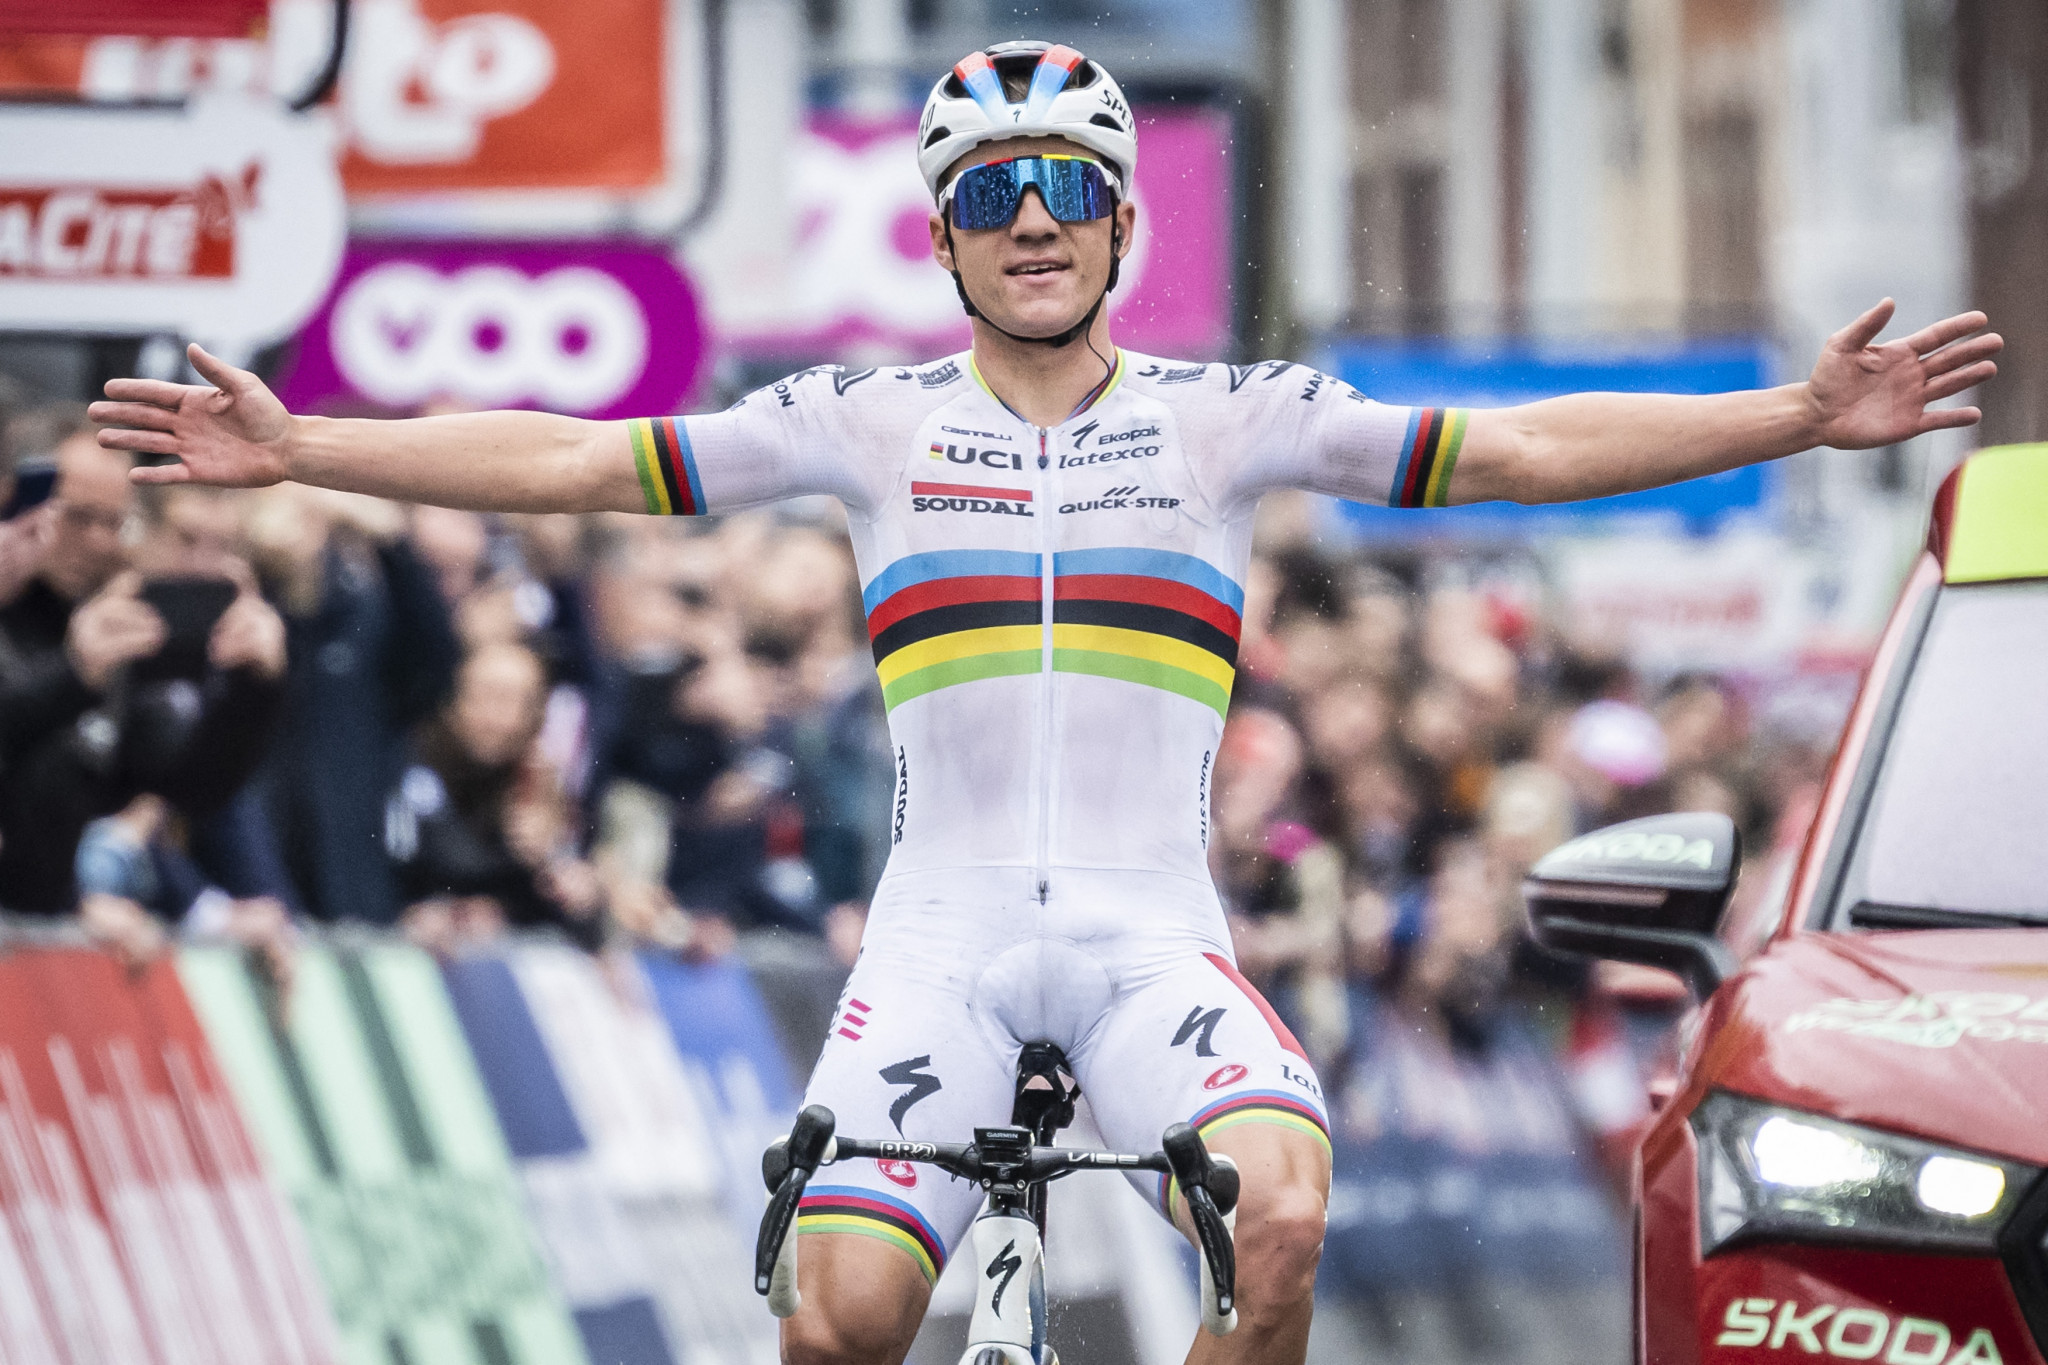 Evenepoel clinches Liège-Bastogne-Liège win after Pogačar crash leaves him in doubt for Tour de France